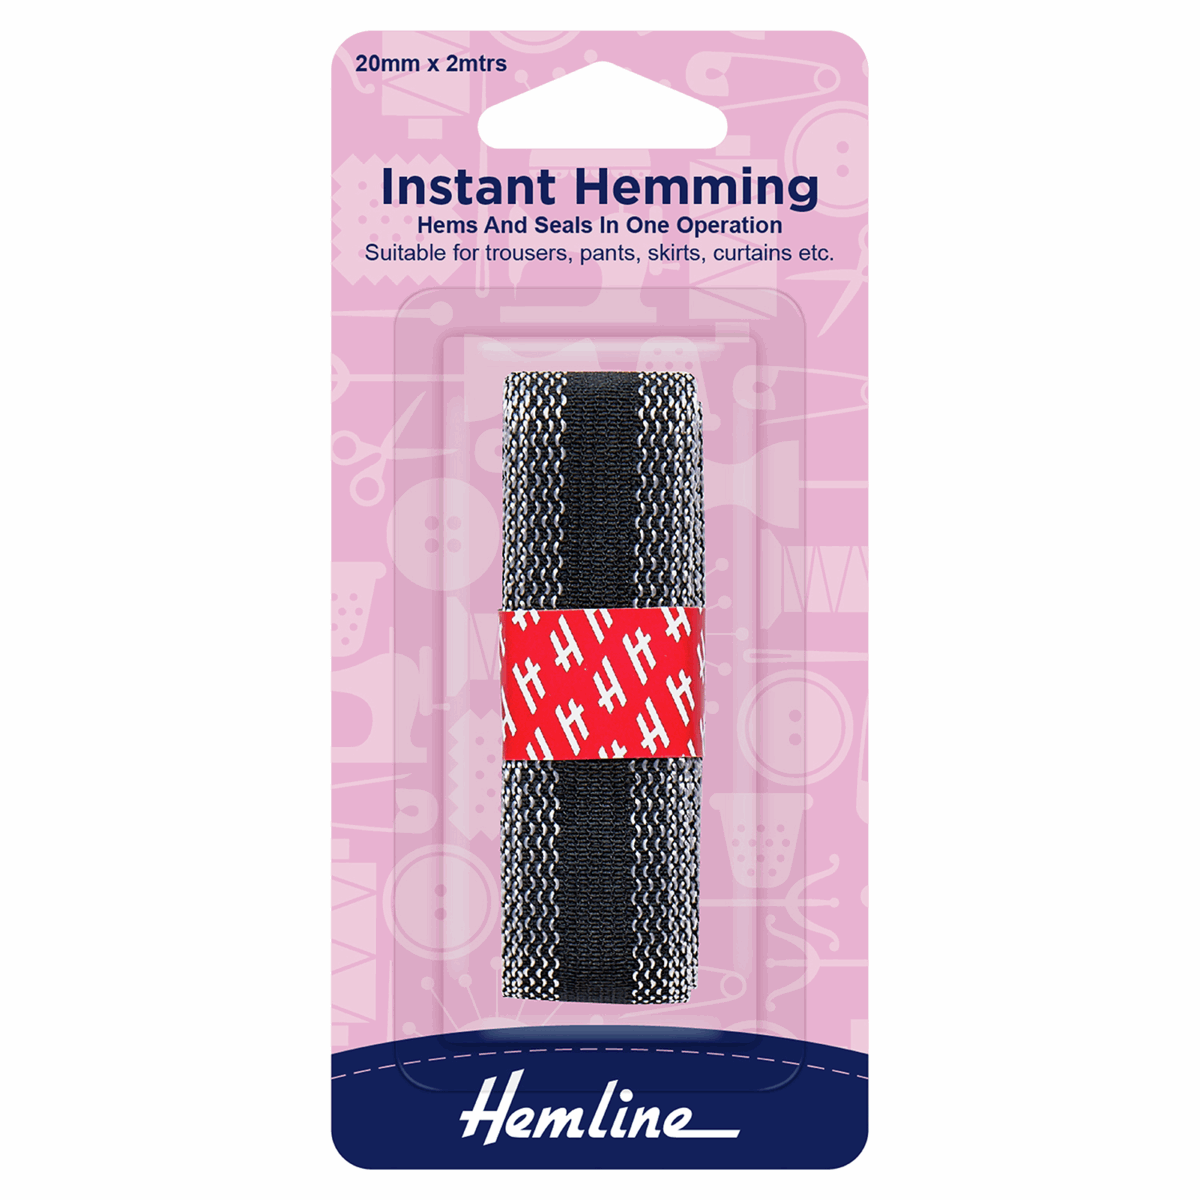 Hemline Instant Hemming Tape - Black 2m x 20mm